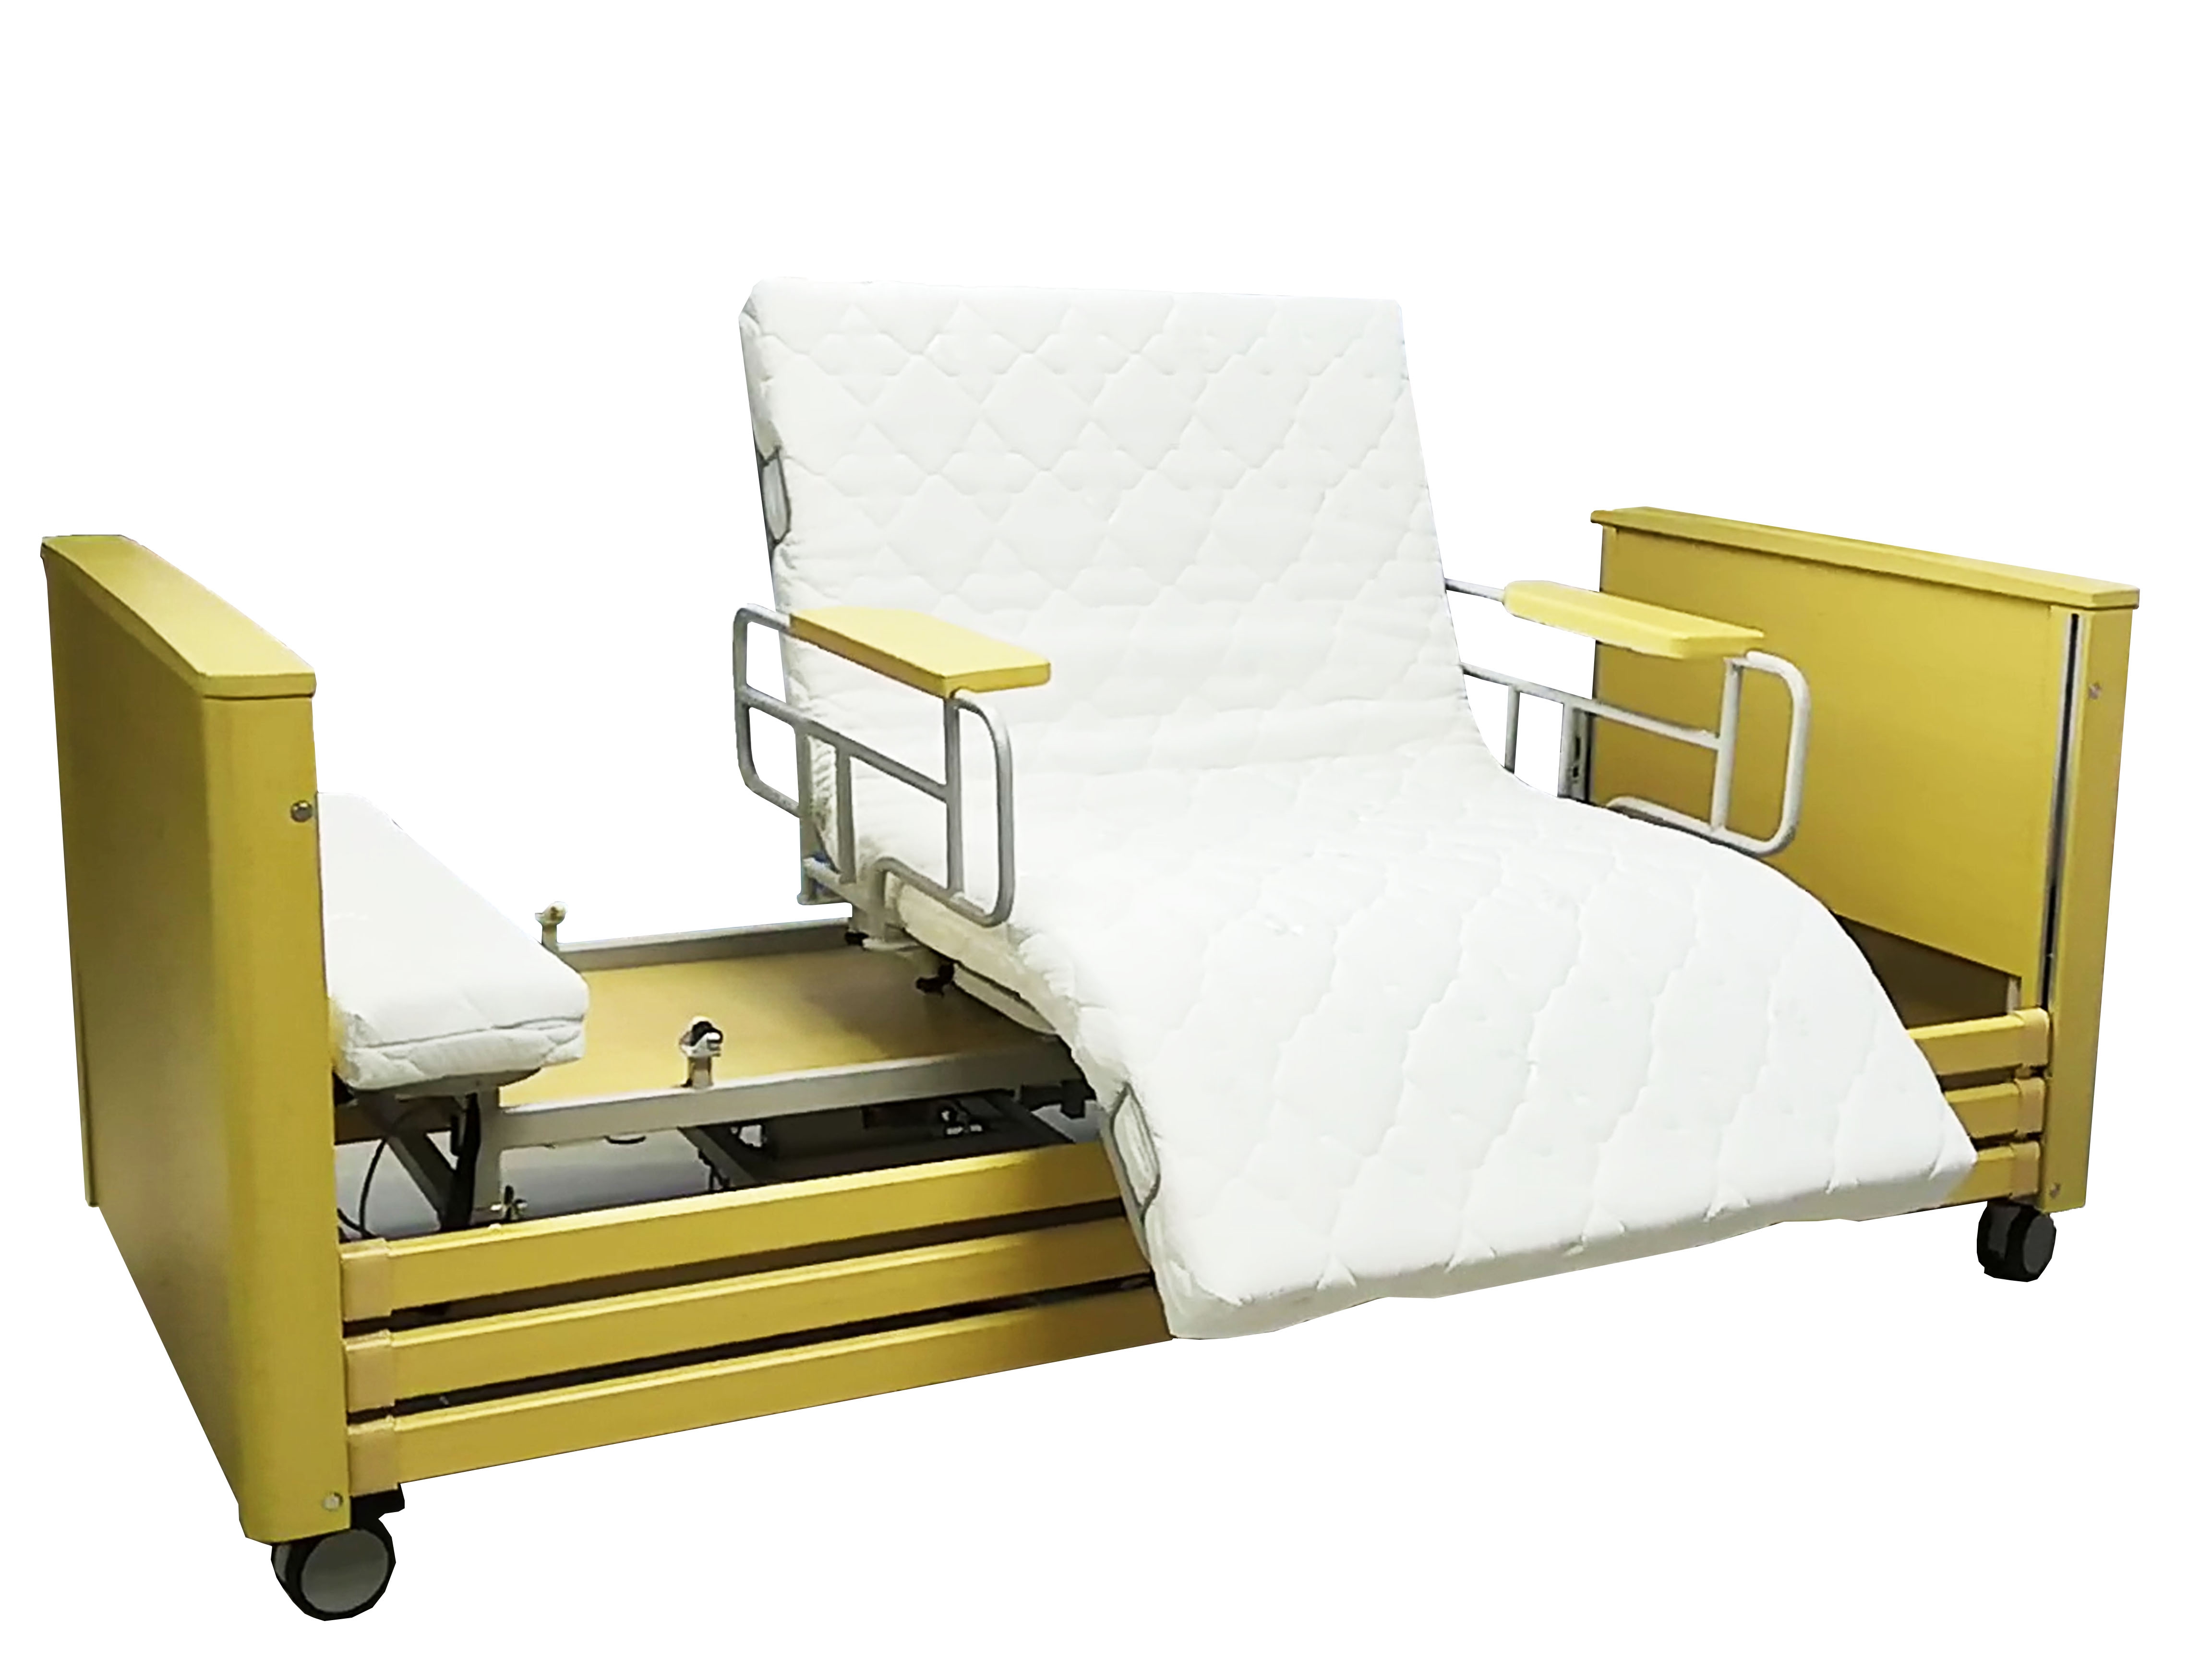 เตียงปรับระดับไฟฟ้า,เตียงคนป่วยไฟฟ้า,อัมพาตครึ่งซีก, เตียงทางการแพทย์